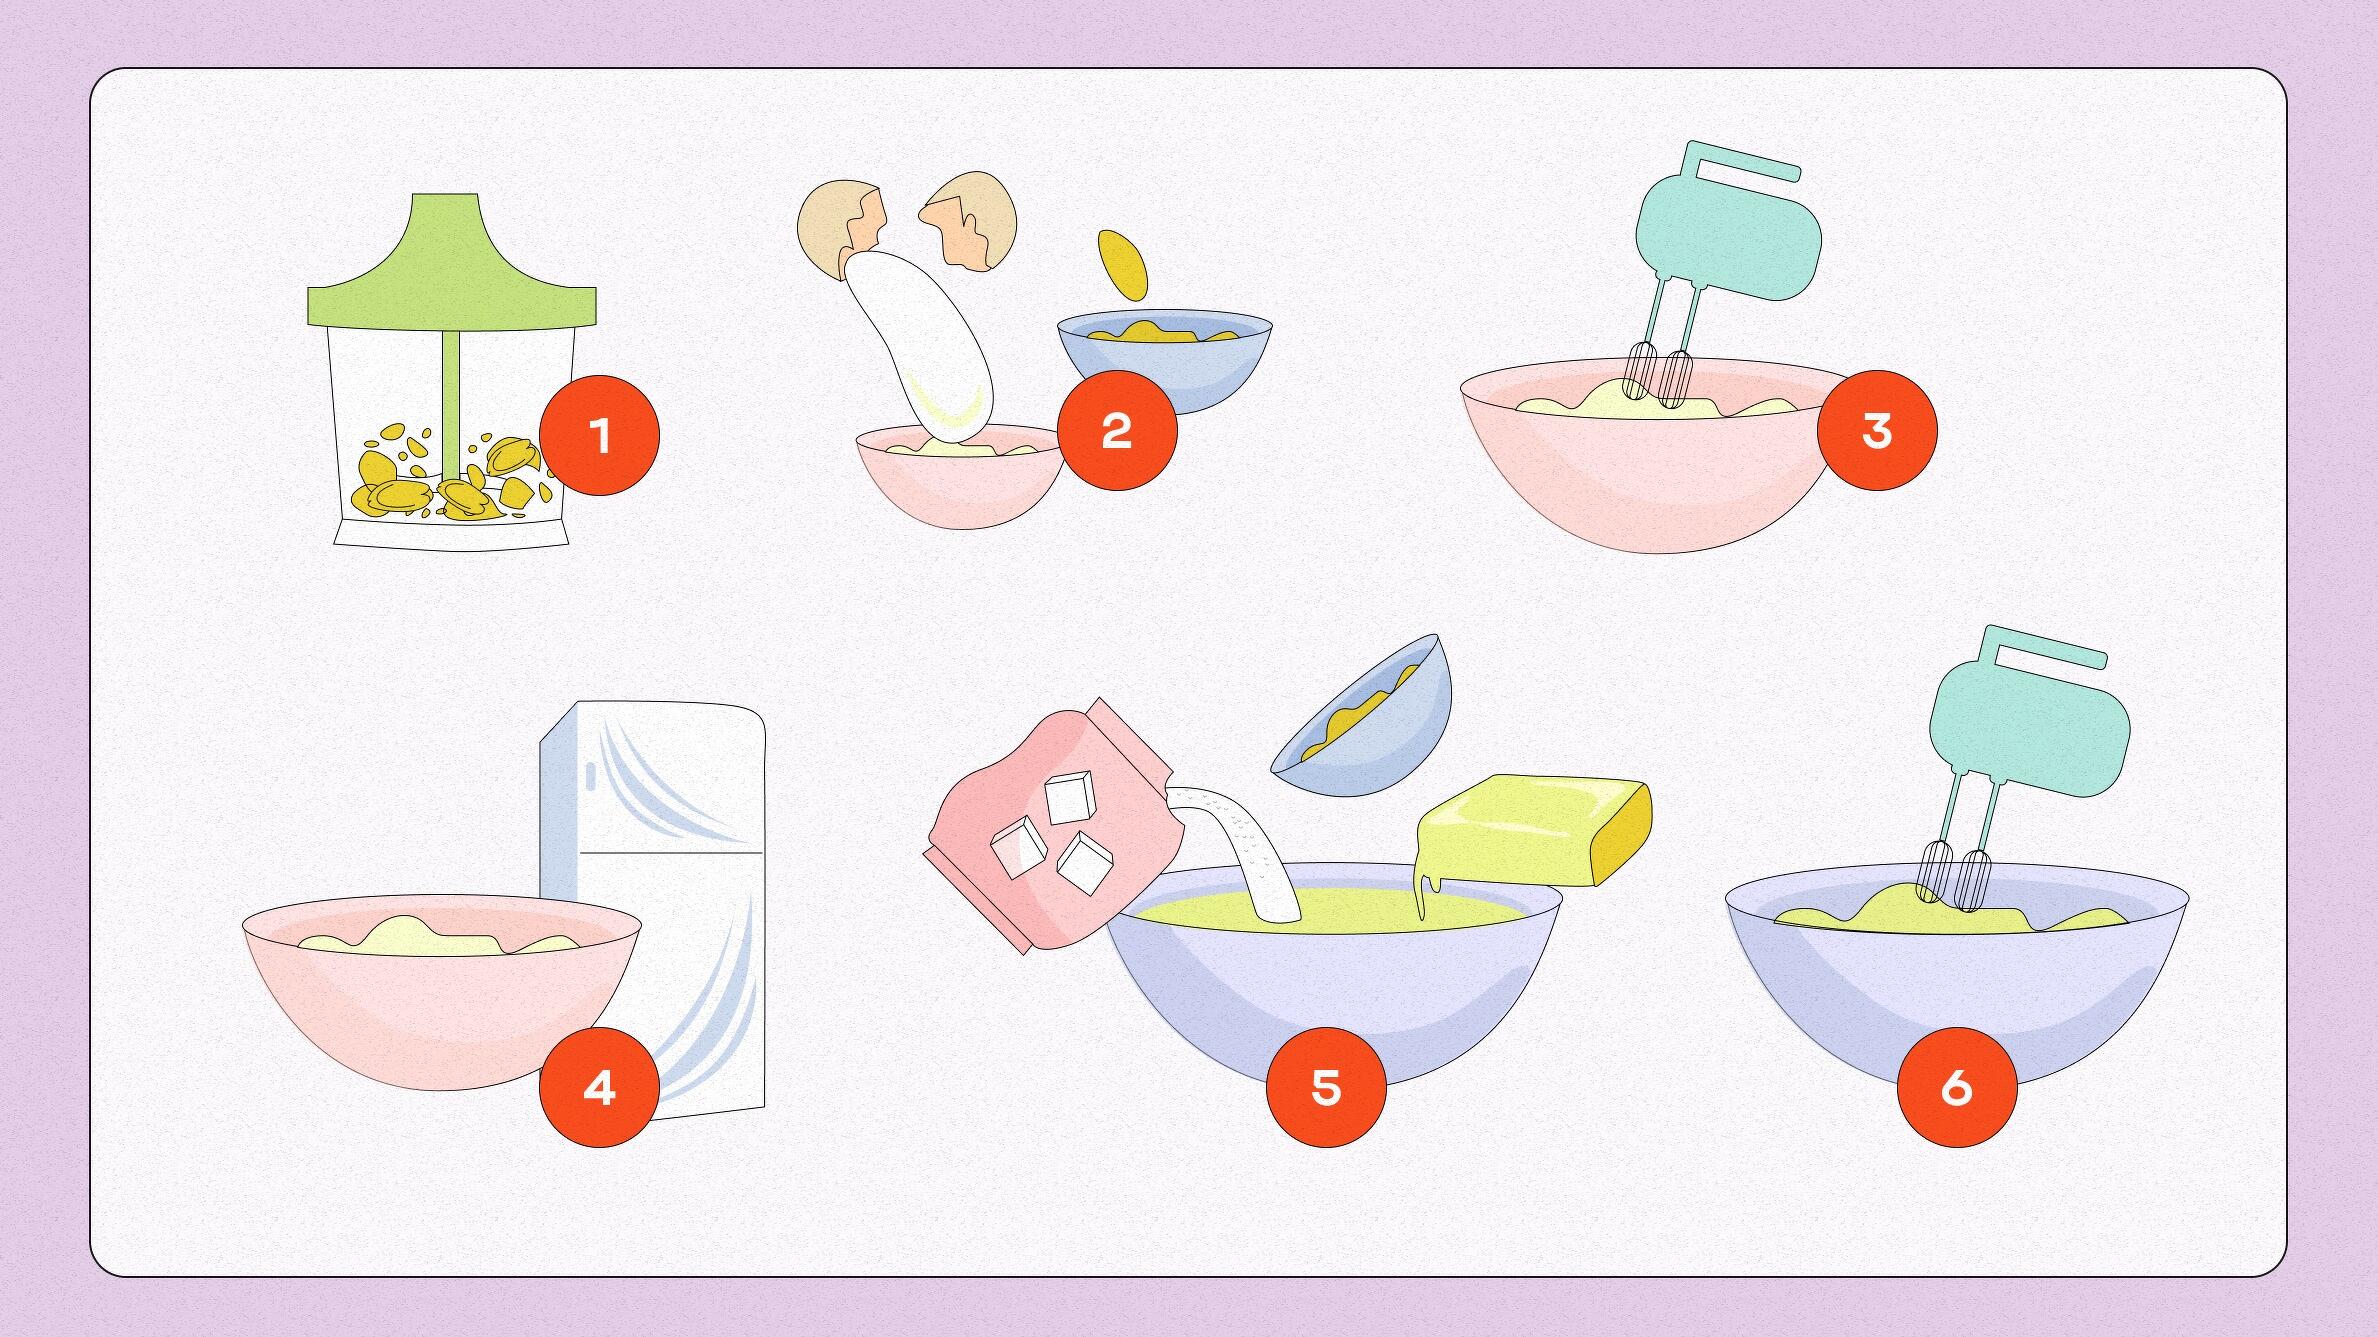 Как приготовить ПП-печенье? 5 простых рецептов, с которыми справиться каждый